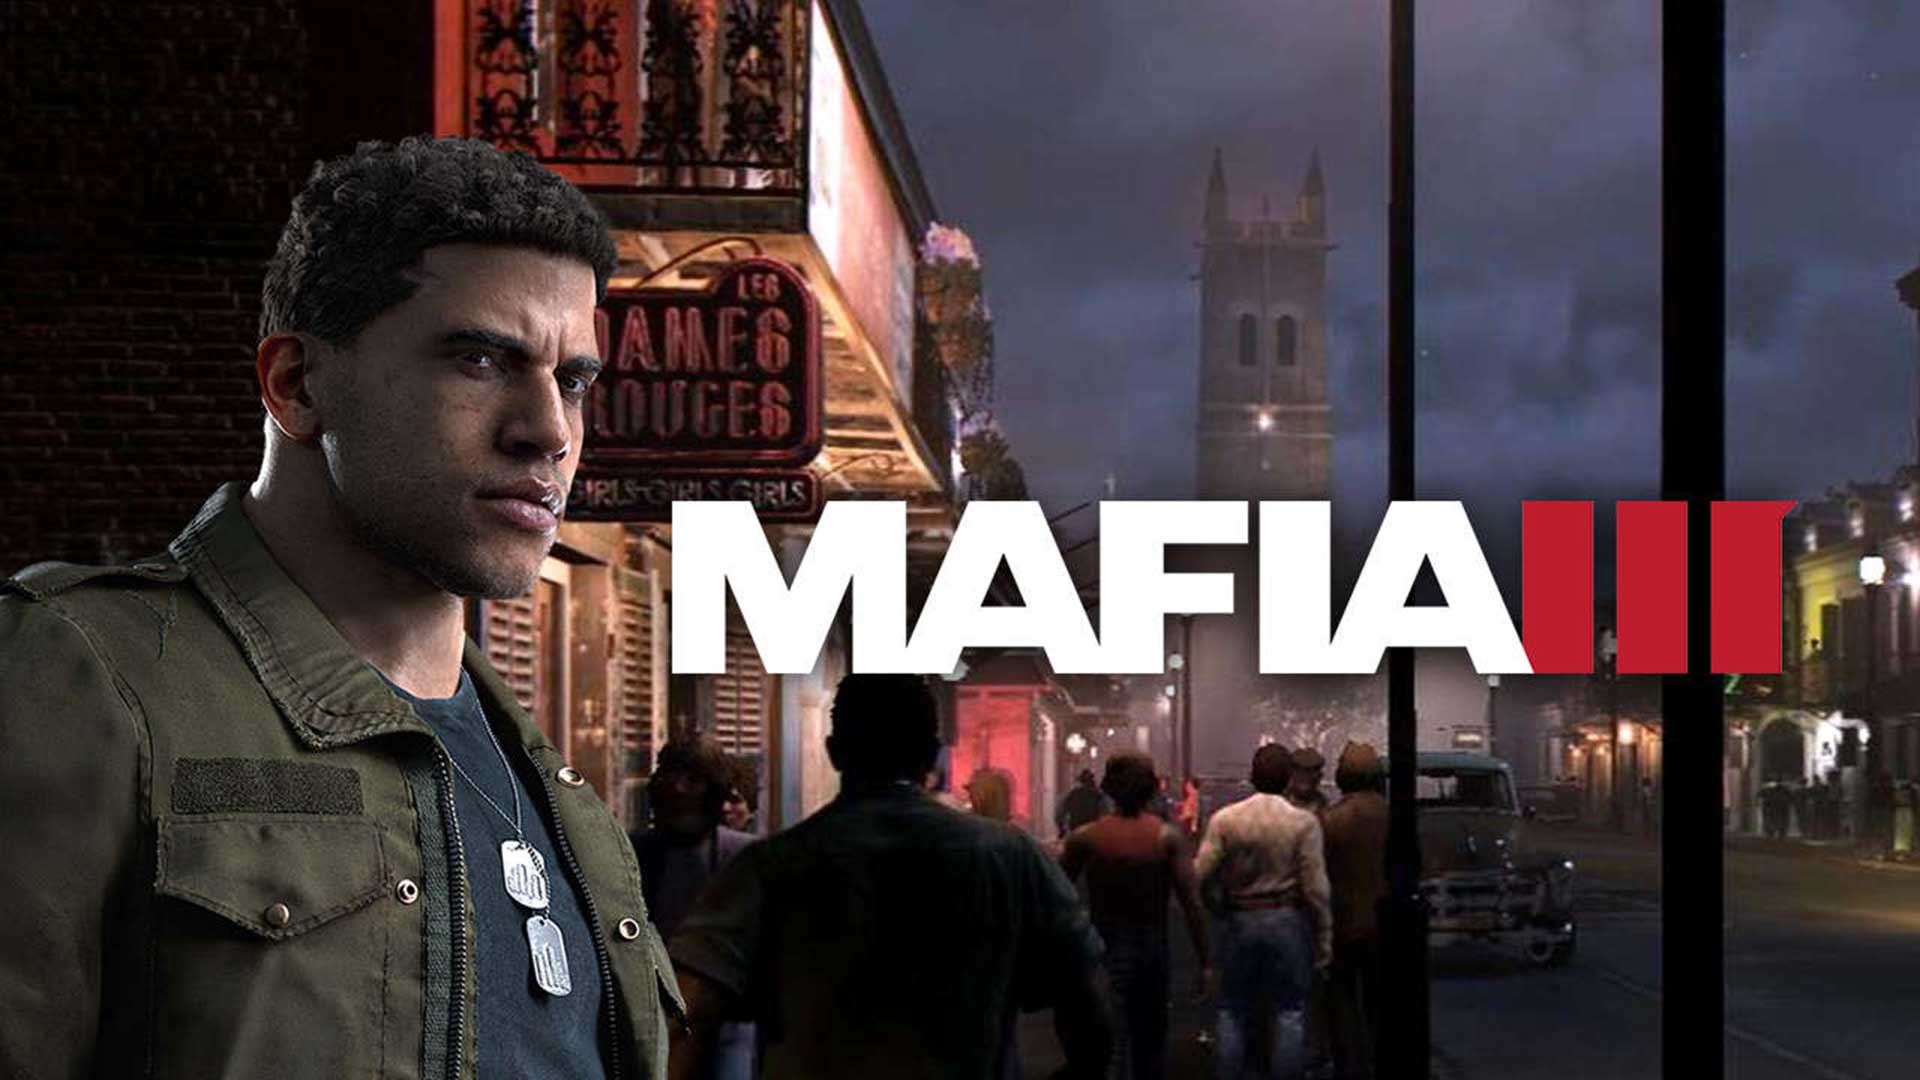 Requisitos para jugar Mafia III en PC